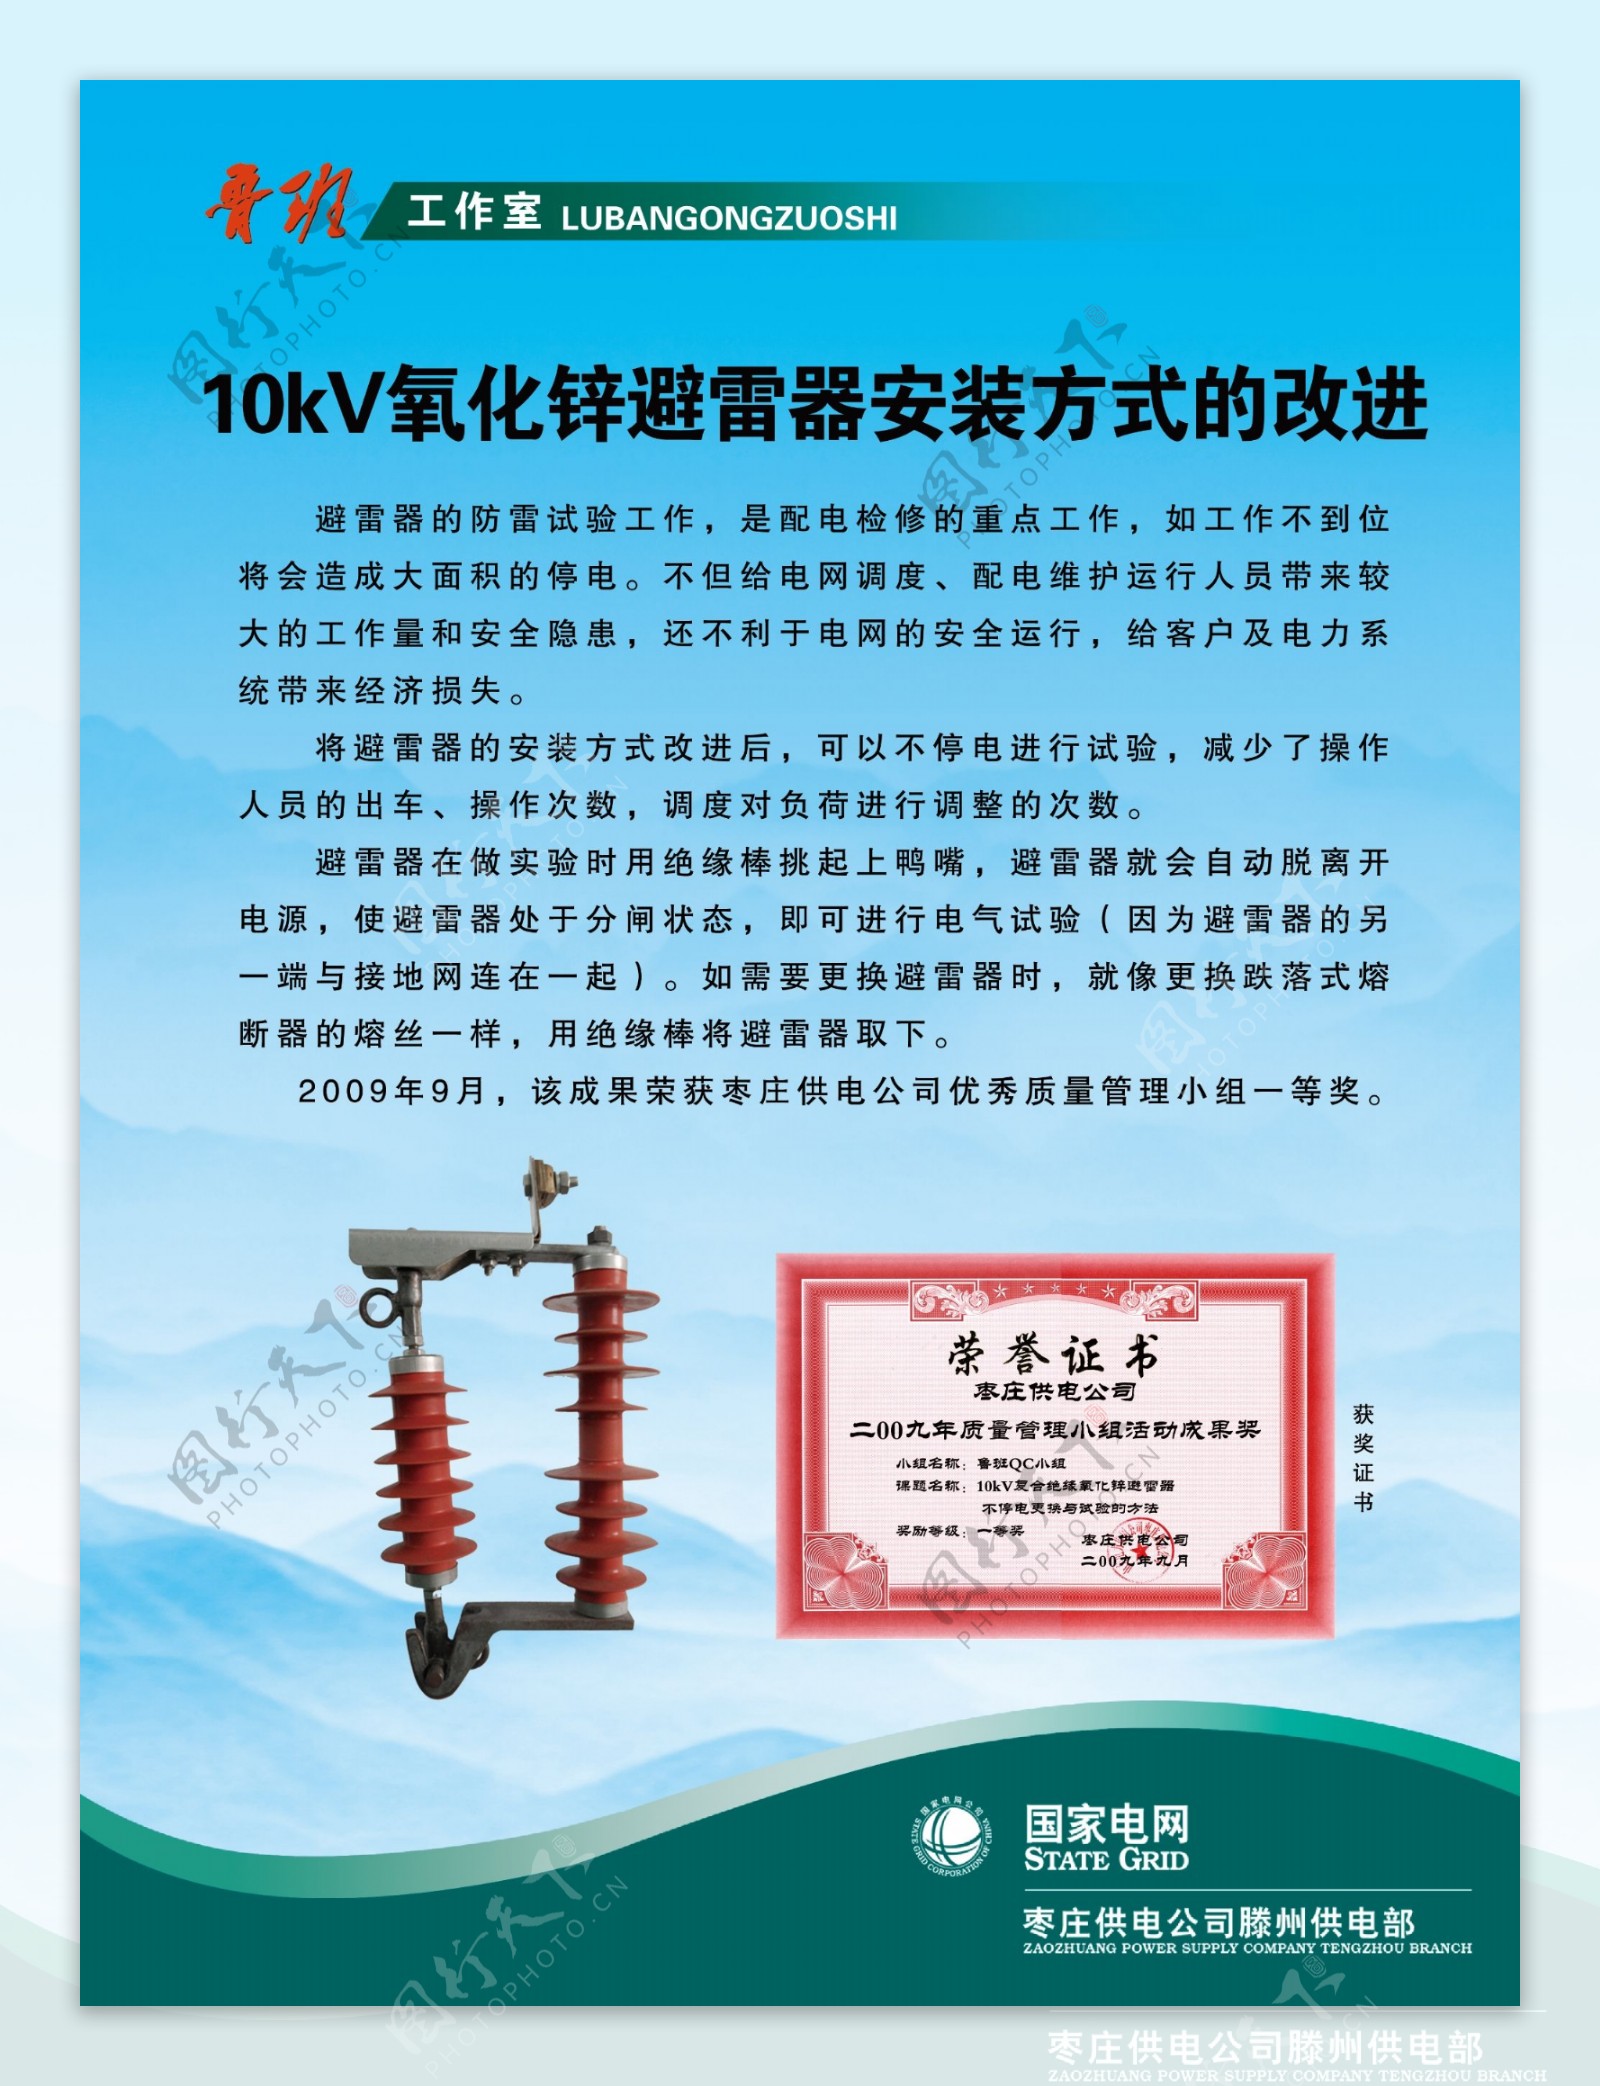 10kV氧化锌避雷器安装方式的改进